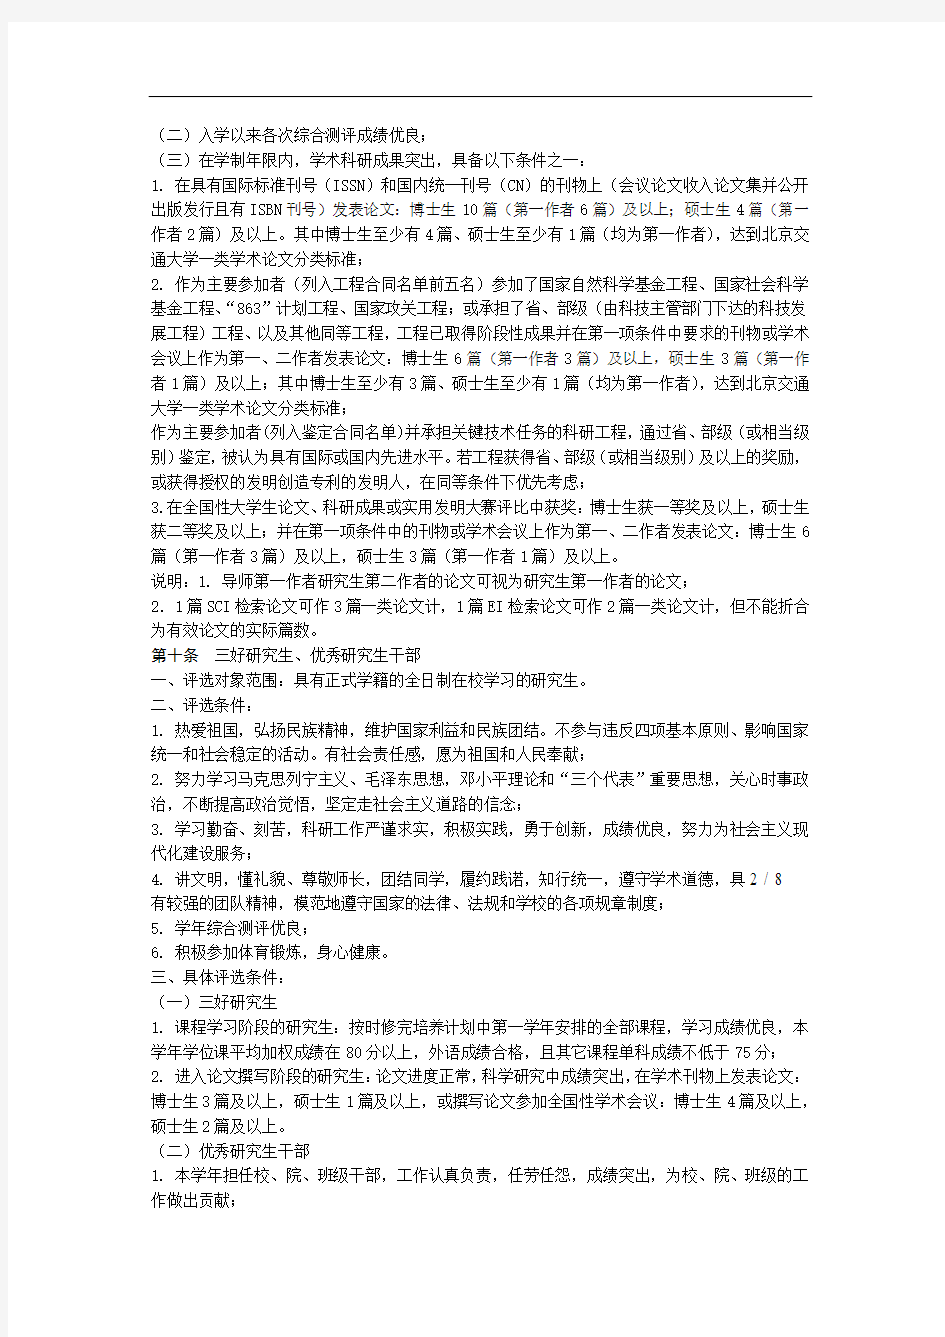 北京交通大学研究生奖励实施细则